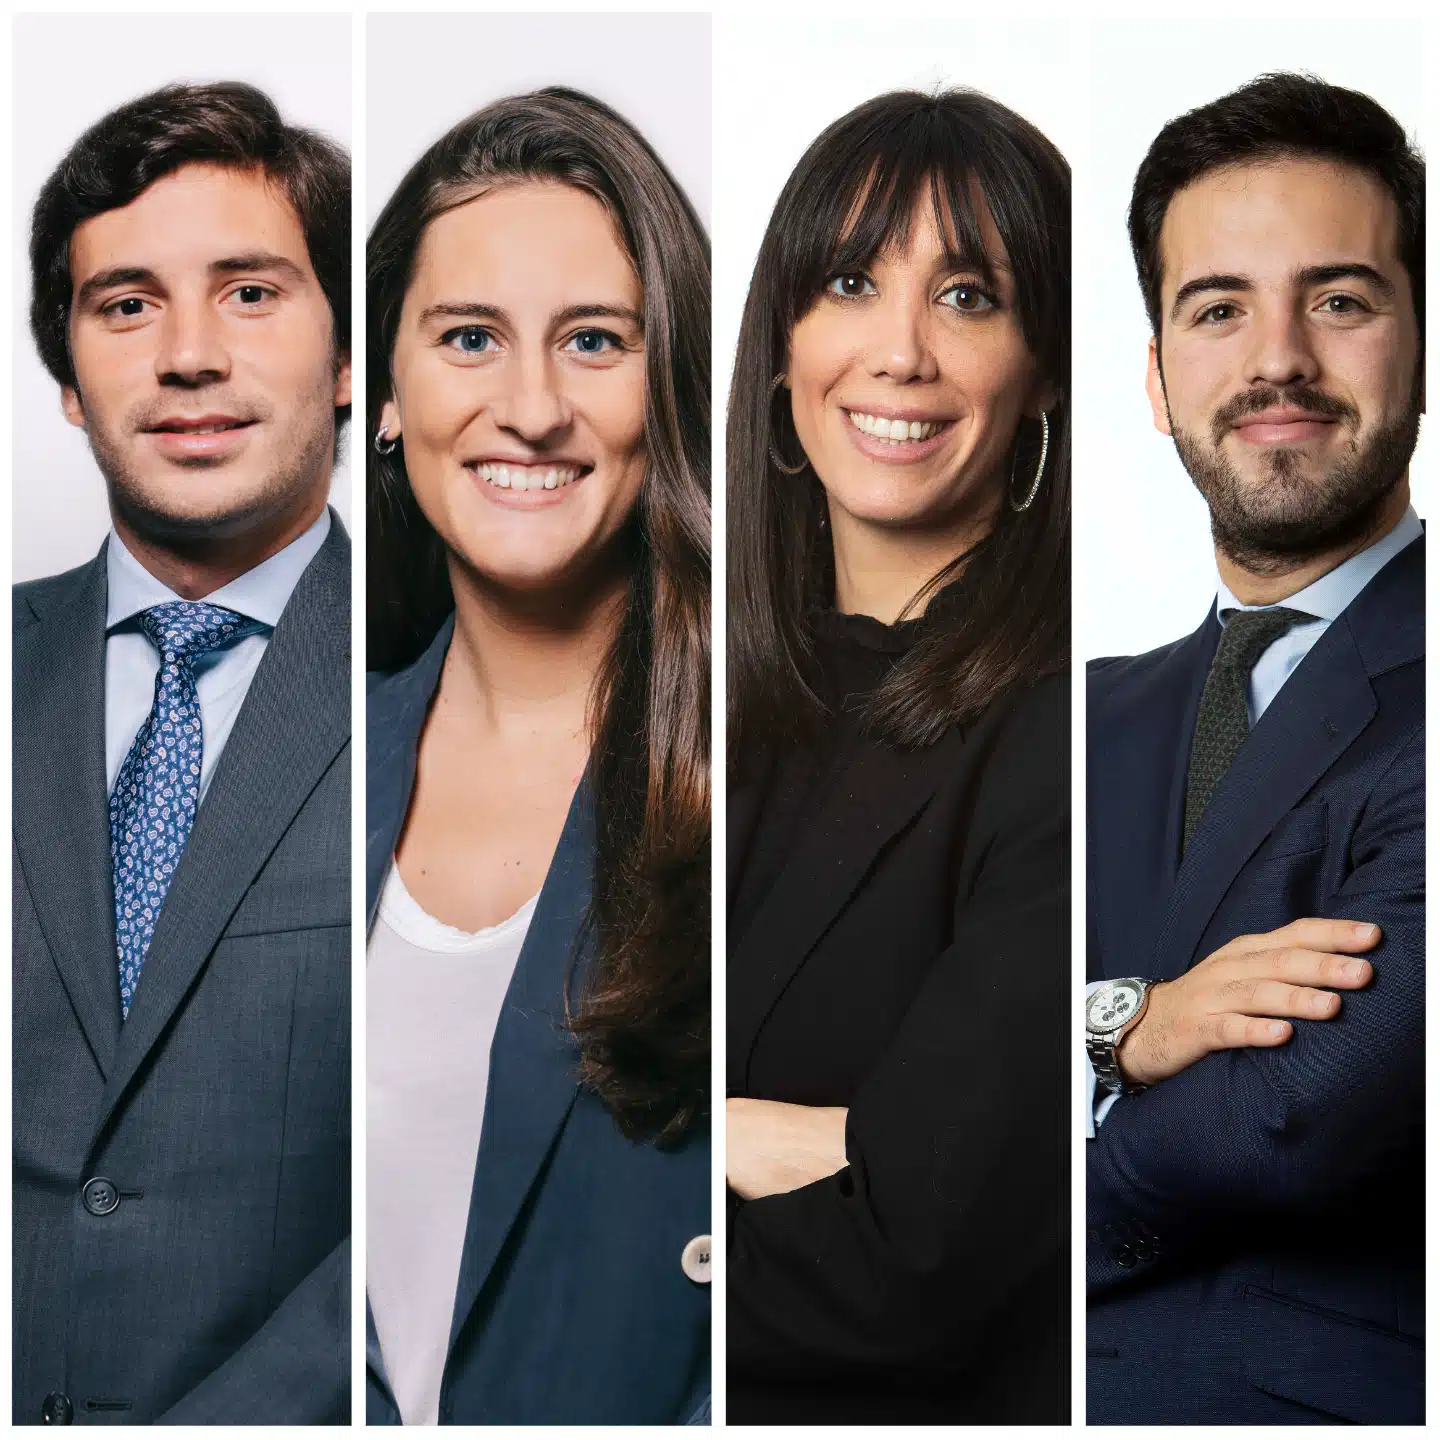 Sagardoy Abogados apuesta por el talento interno: Ana Goerlich, Alberto Godino, Blanca Martínez e Ignacio Moreno, nuevos asociados